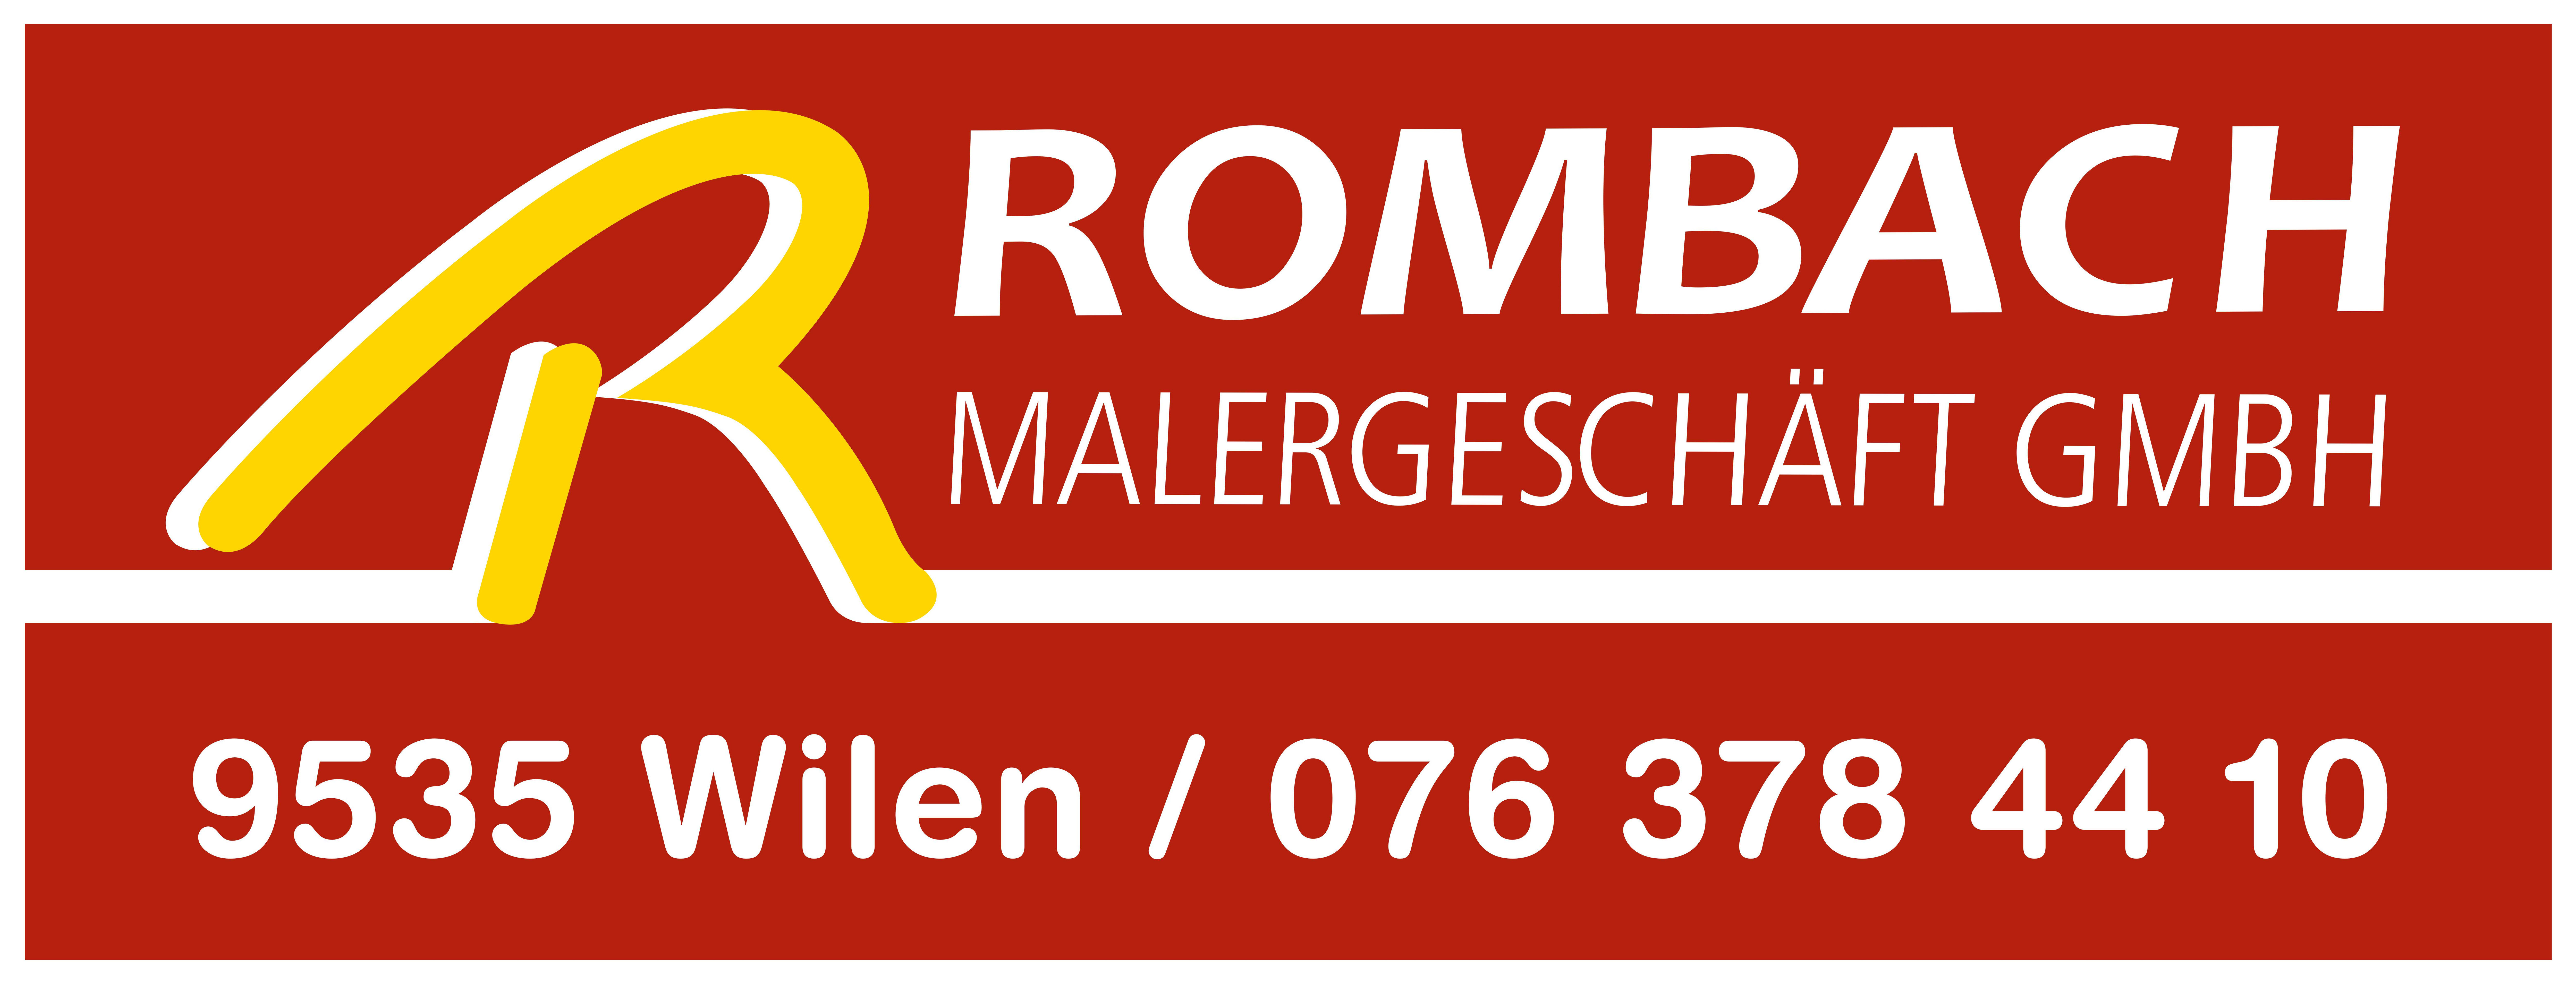 Rombach Malergeschäft